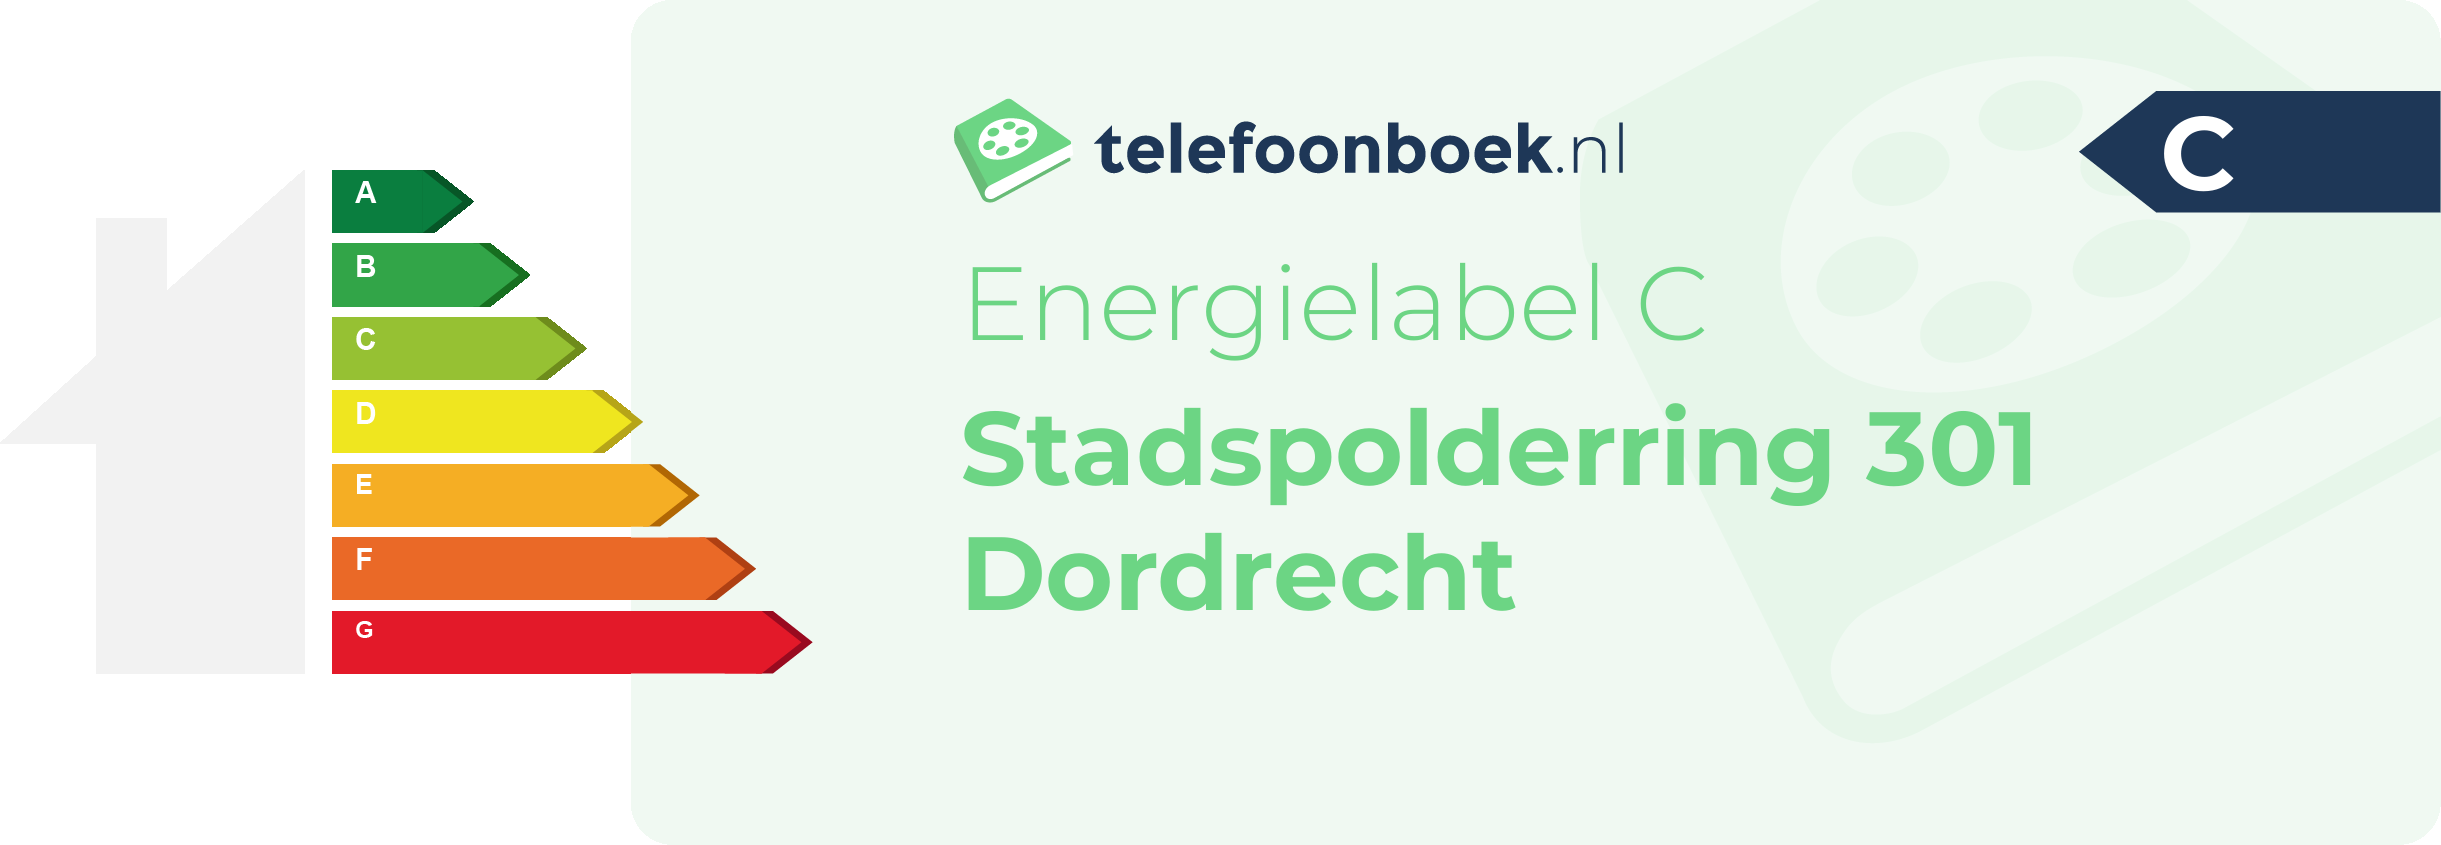 Energielabel Stadspolderring 301 Dordrecht